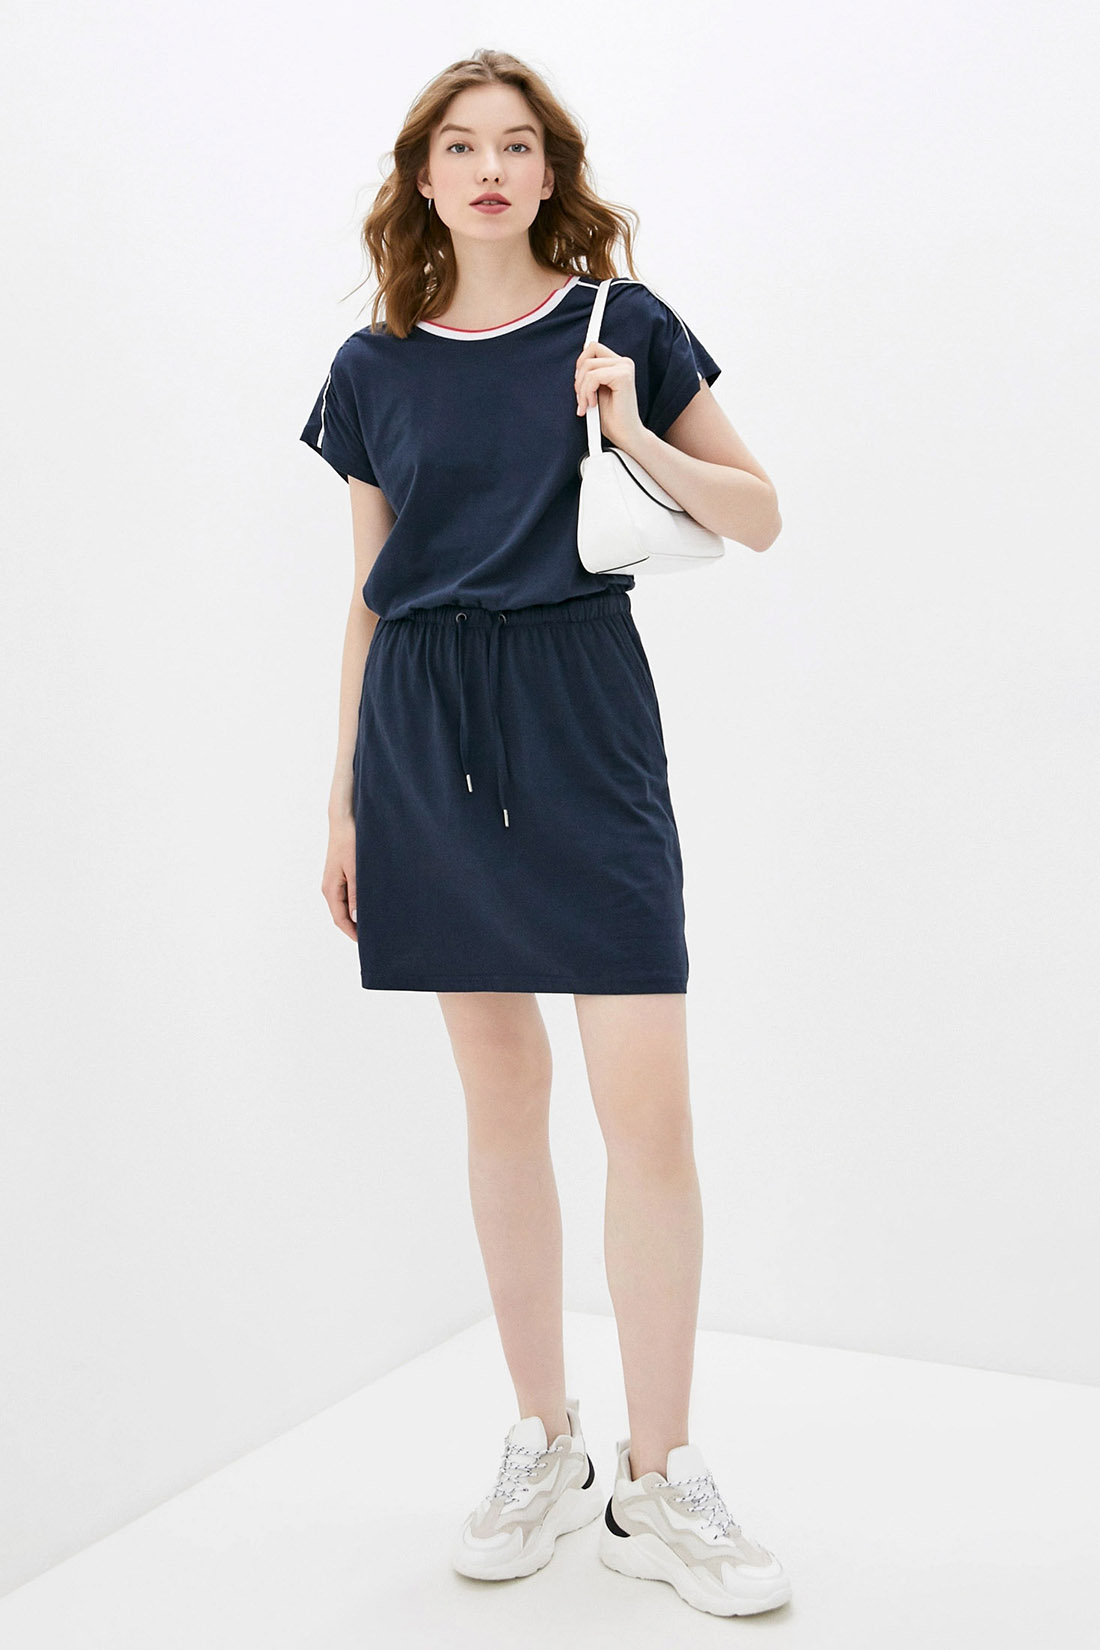 Платье-футболка с кулиской (арт. baon B459097), размер S, цвет синий Платье-футболка с кулиской (арт. baon B459097) - фото 1